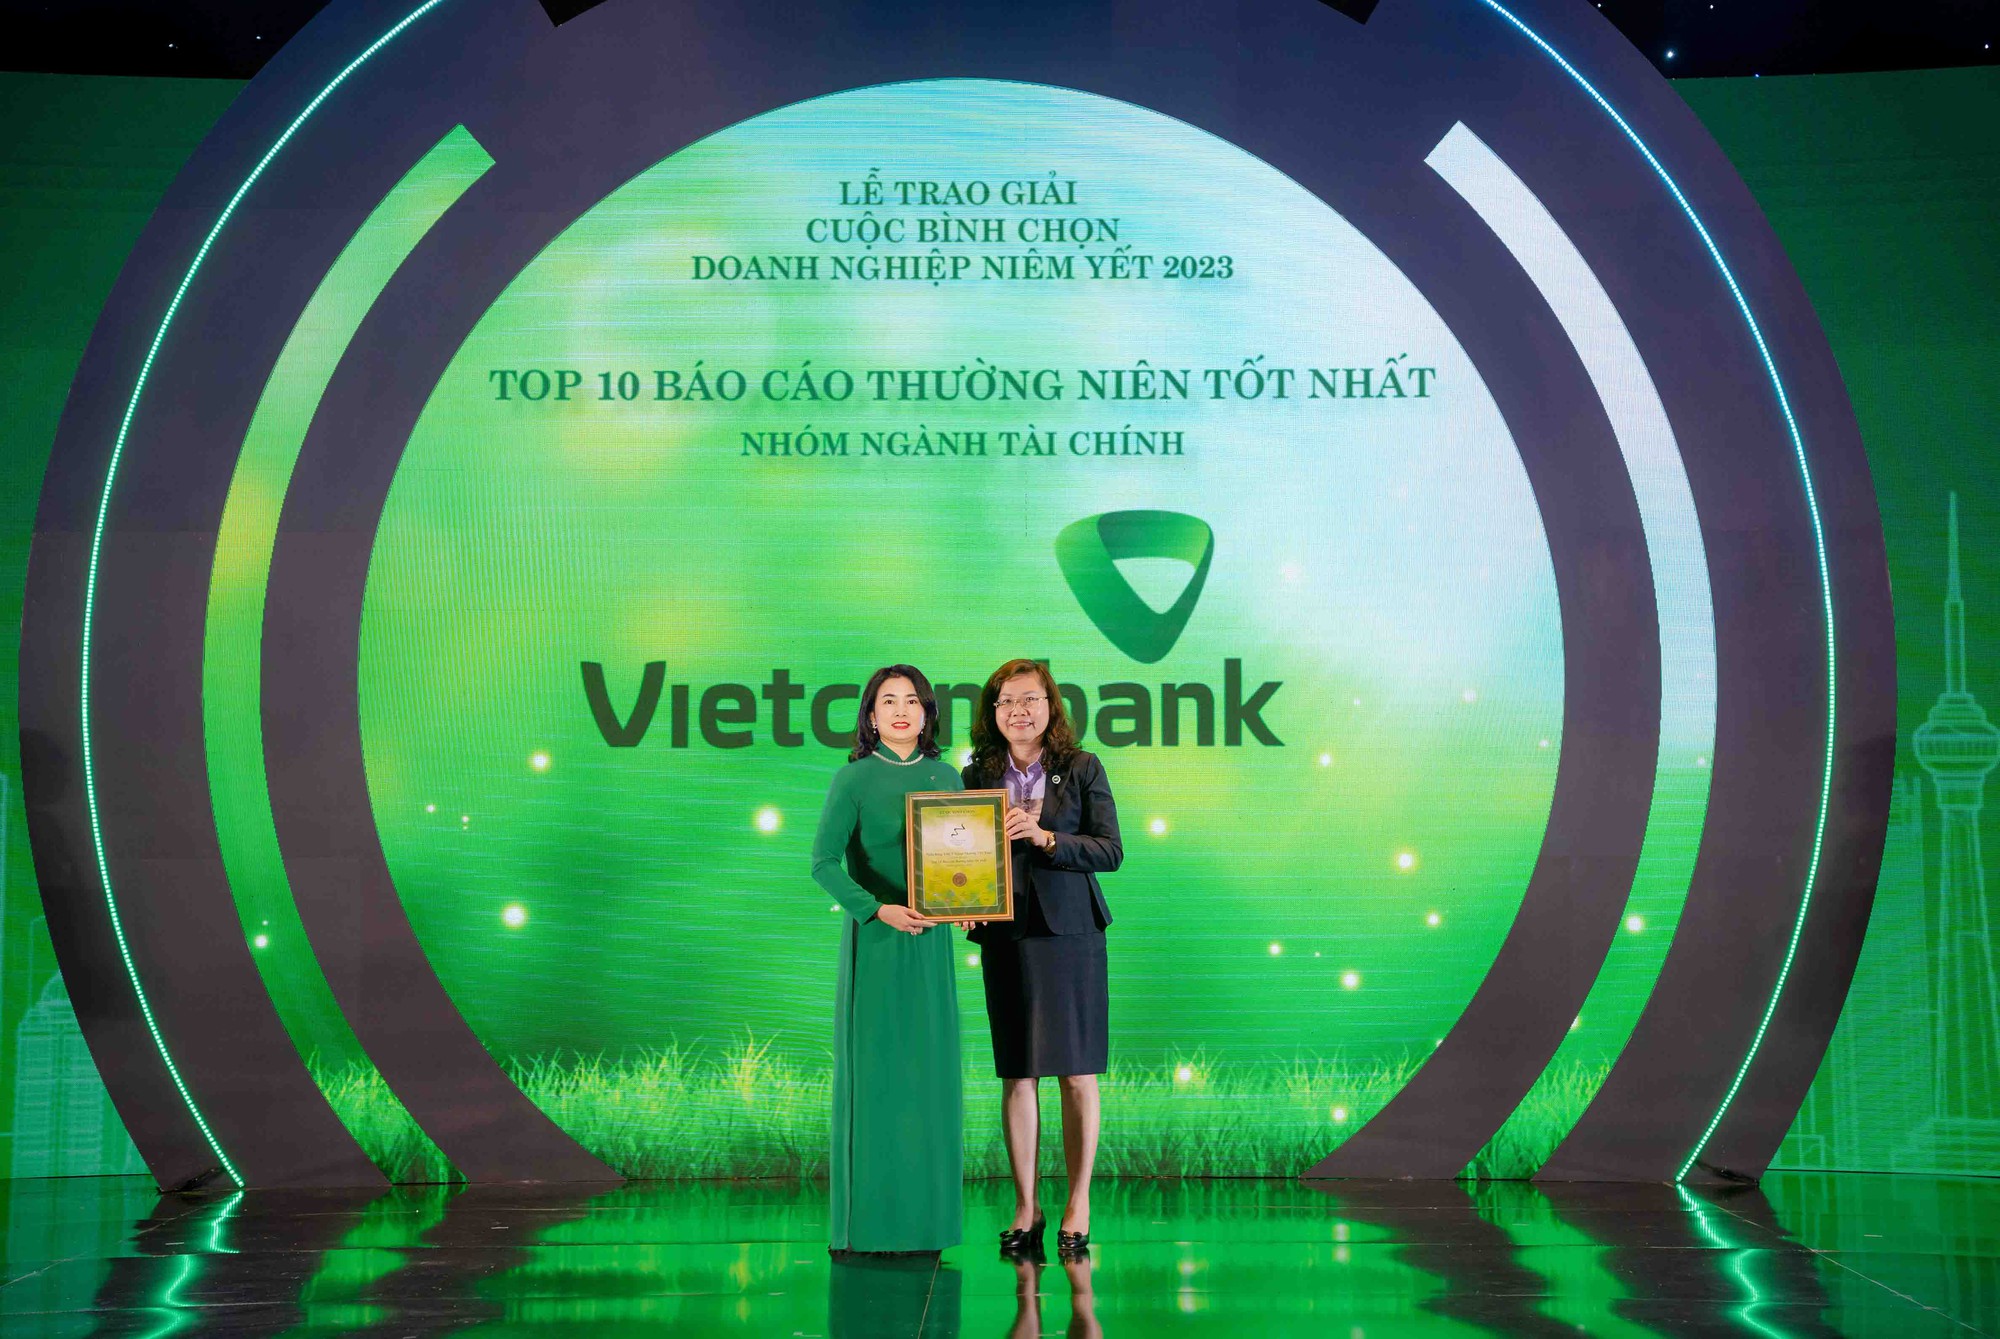 Đại diện Vietcombank, bà Bạch Thị Thanh Hà - Trưởng phòng Quan hệ công chúng (bên trái) nhận giải thưởng từ BTC.